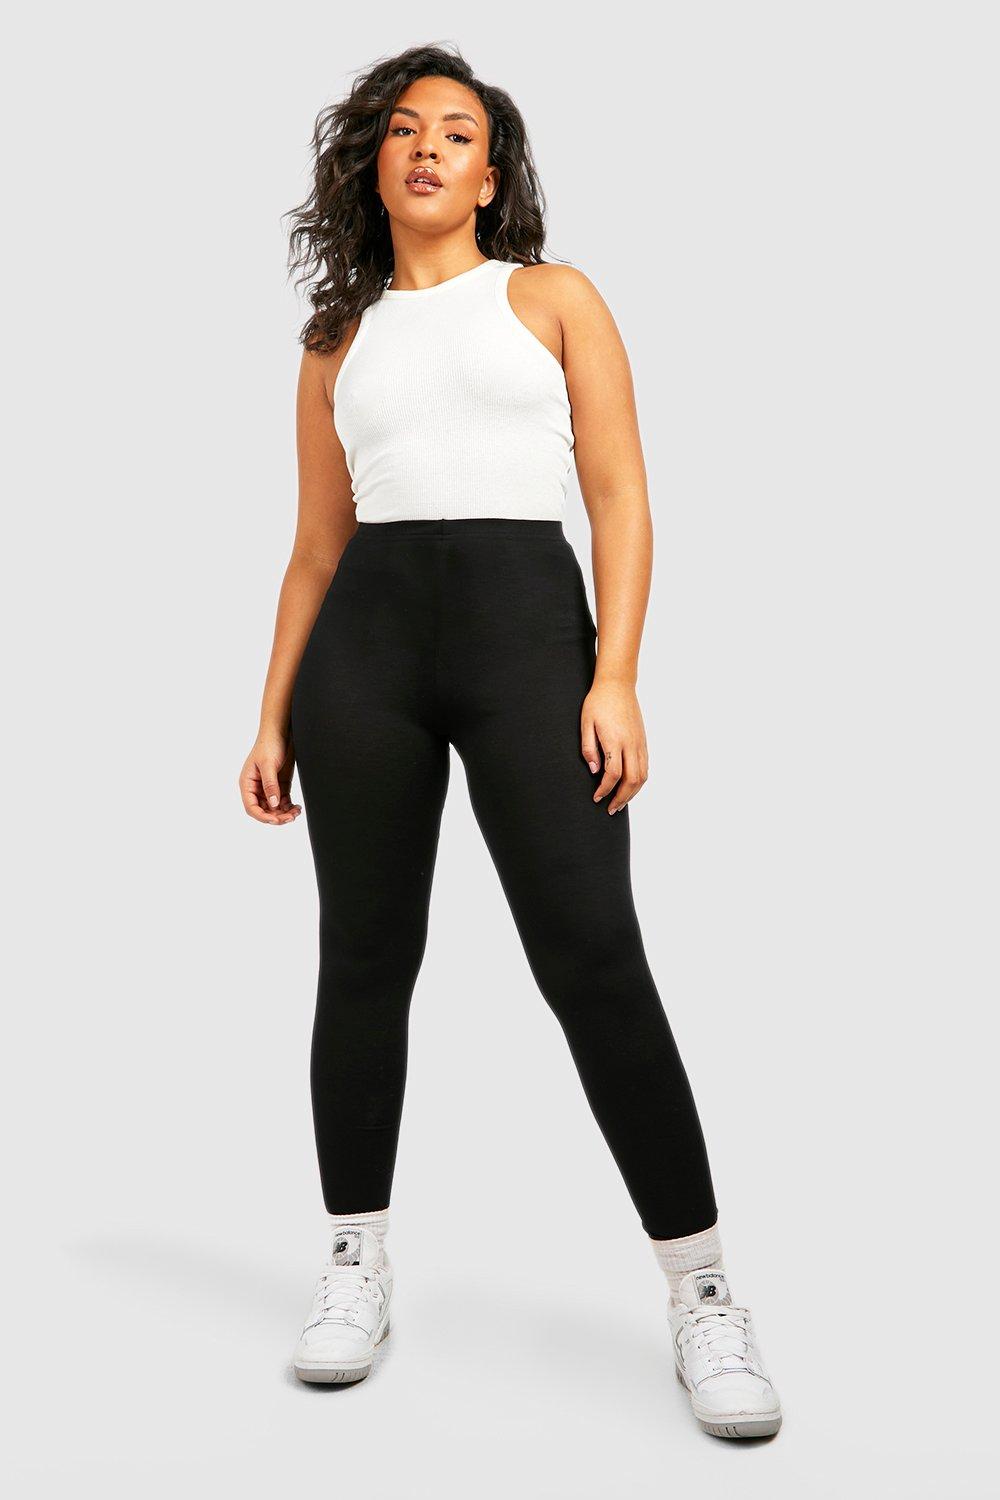 Black Basic single-colour full-length leggings - Buy Online